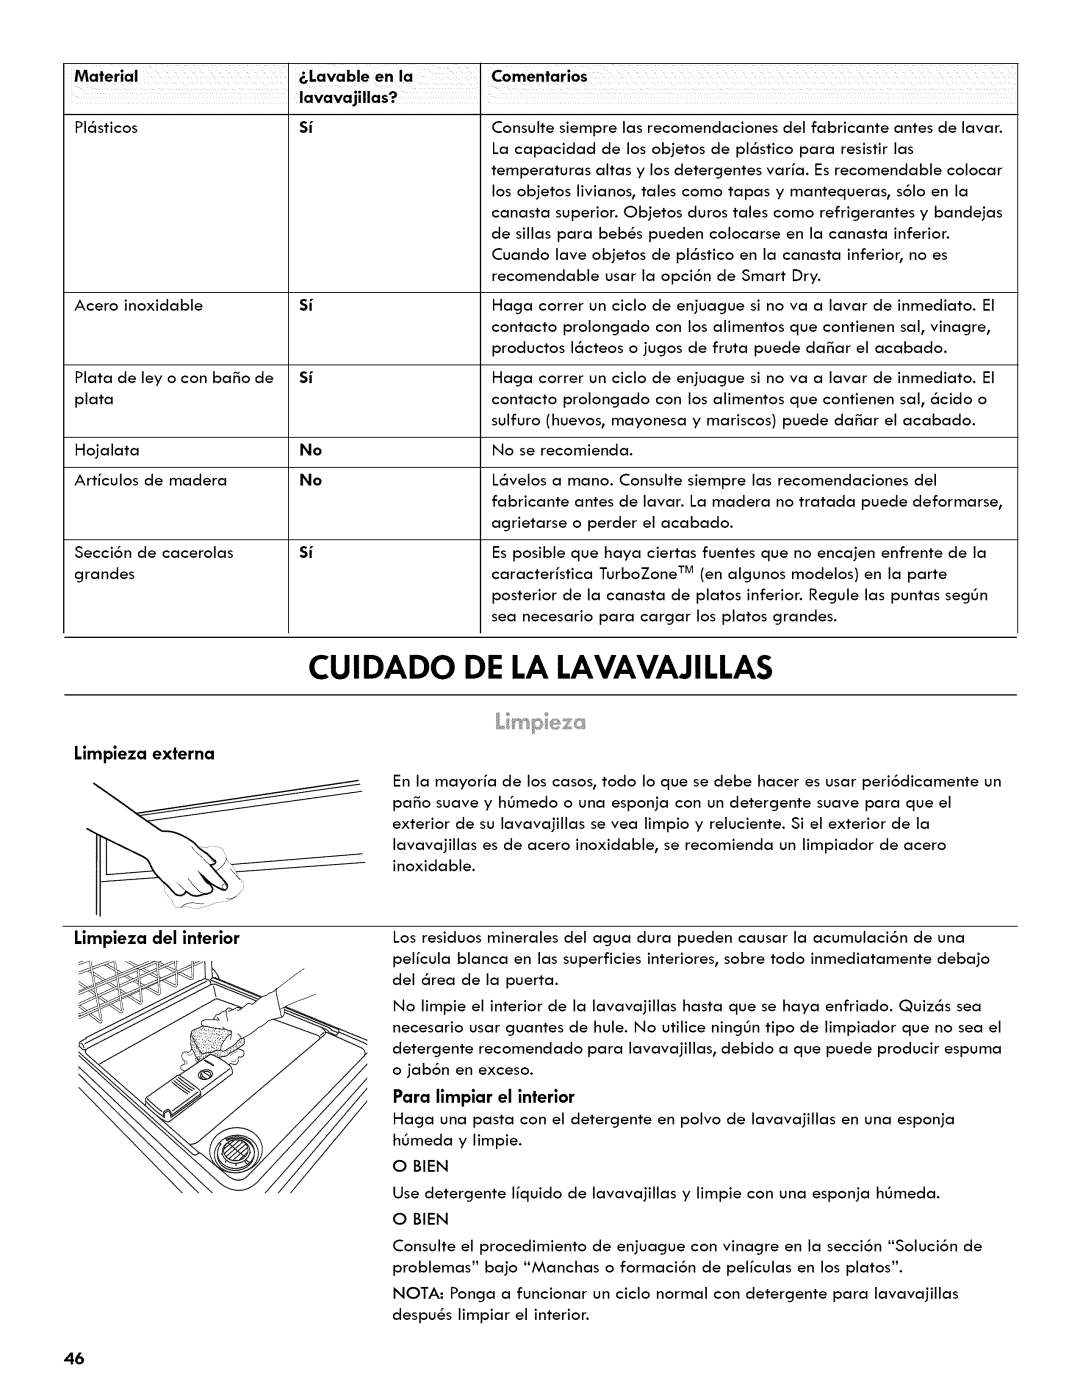 Kenmore 665.1404 manual Cuidado, De La Lavavajillas, Material, Comentarios, lavavajillas? 